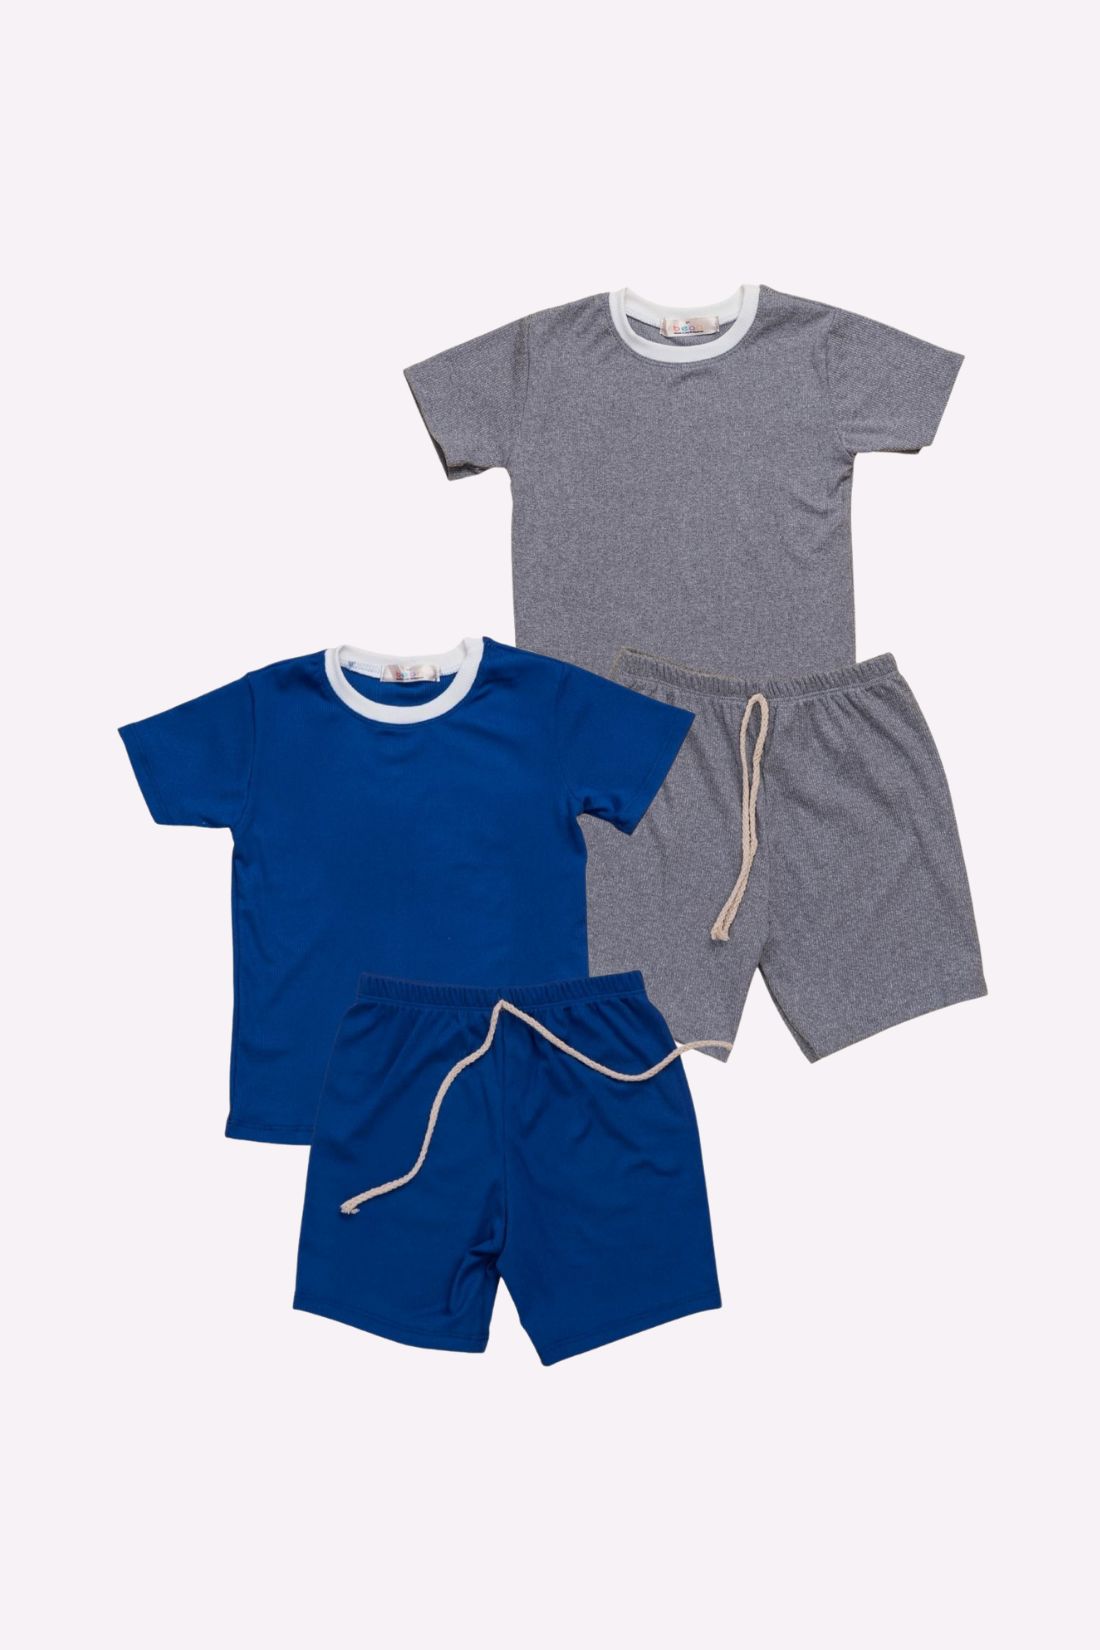 Set of 2 Shorts and Shirt Light Grey Royal Blue